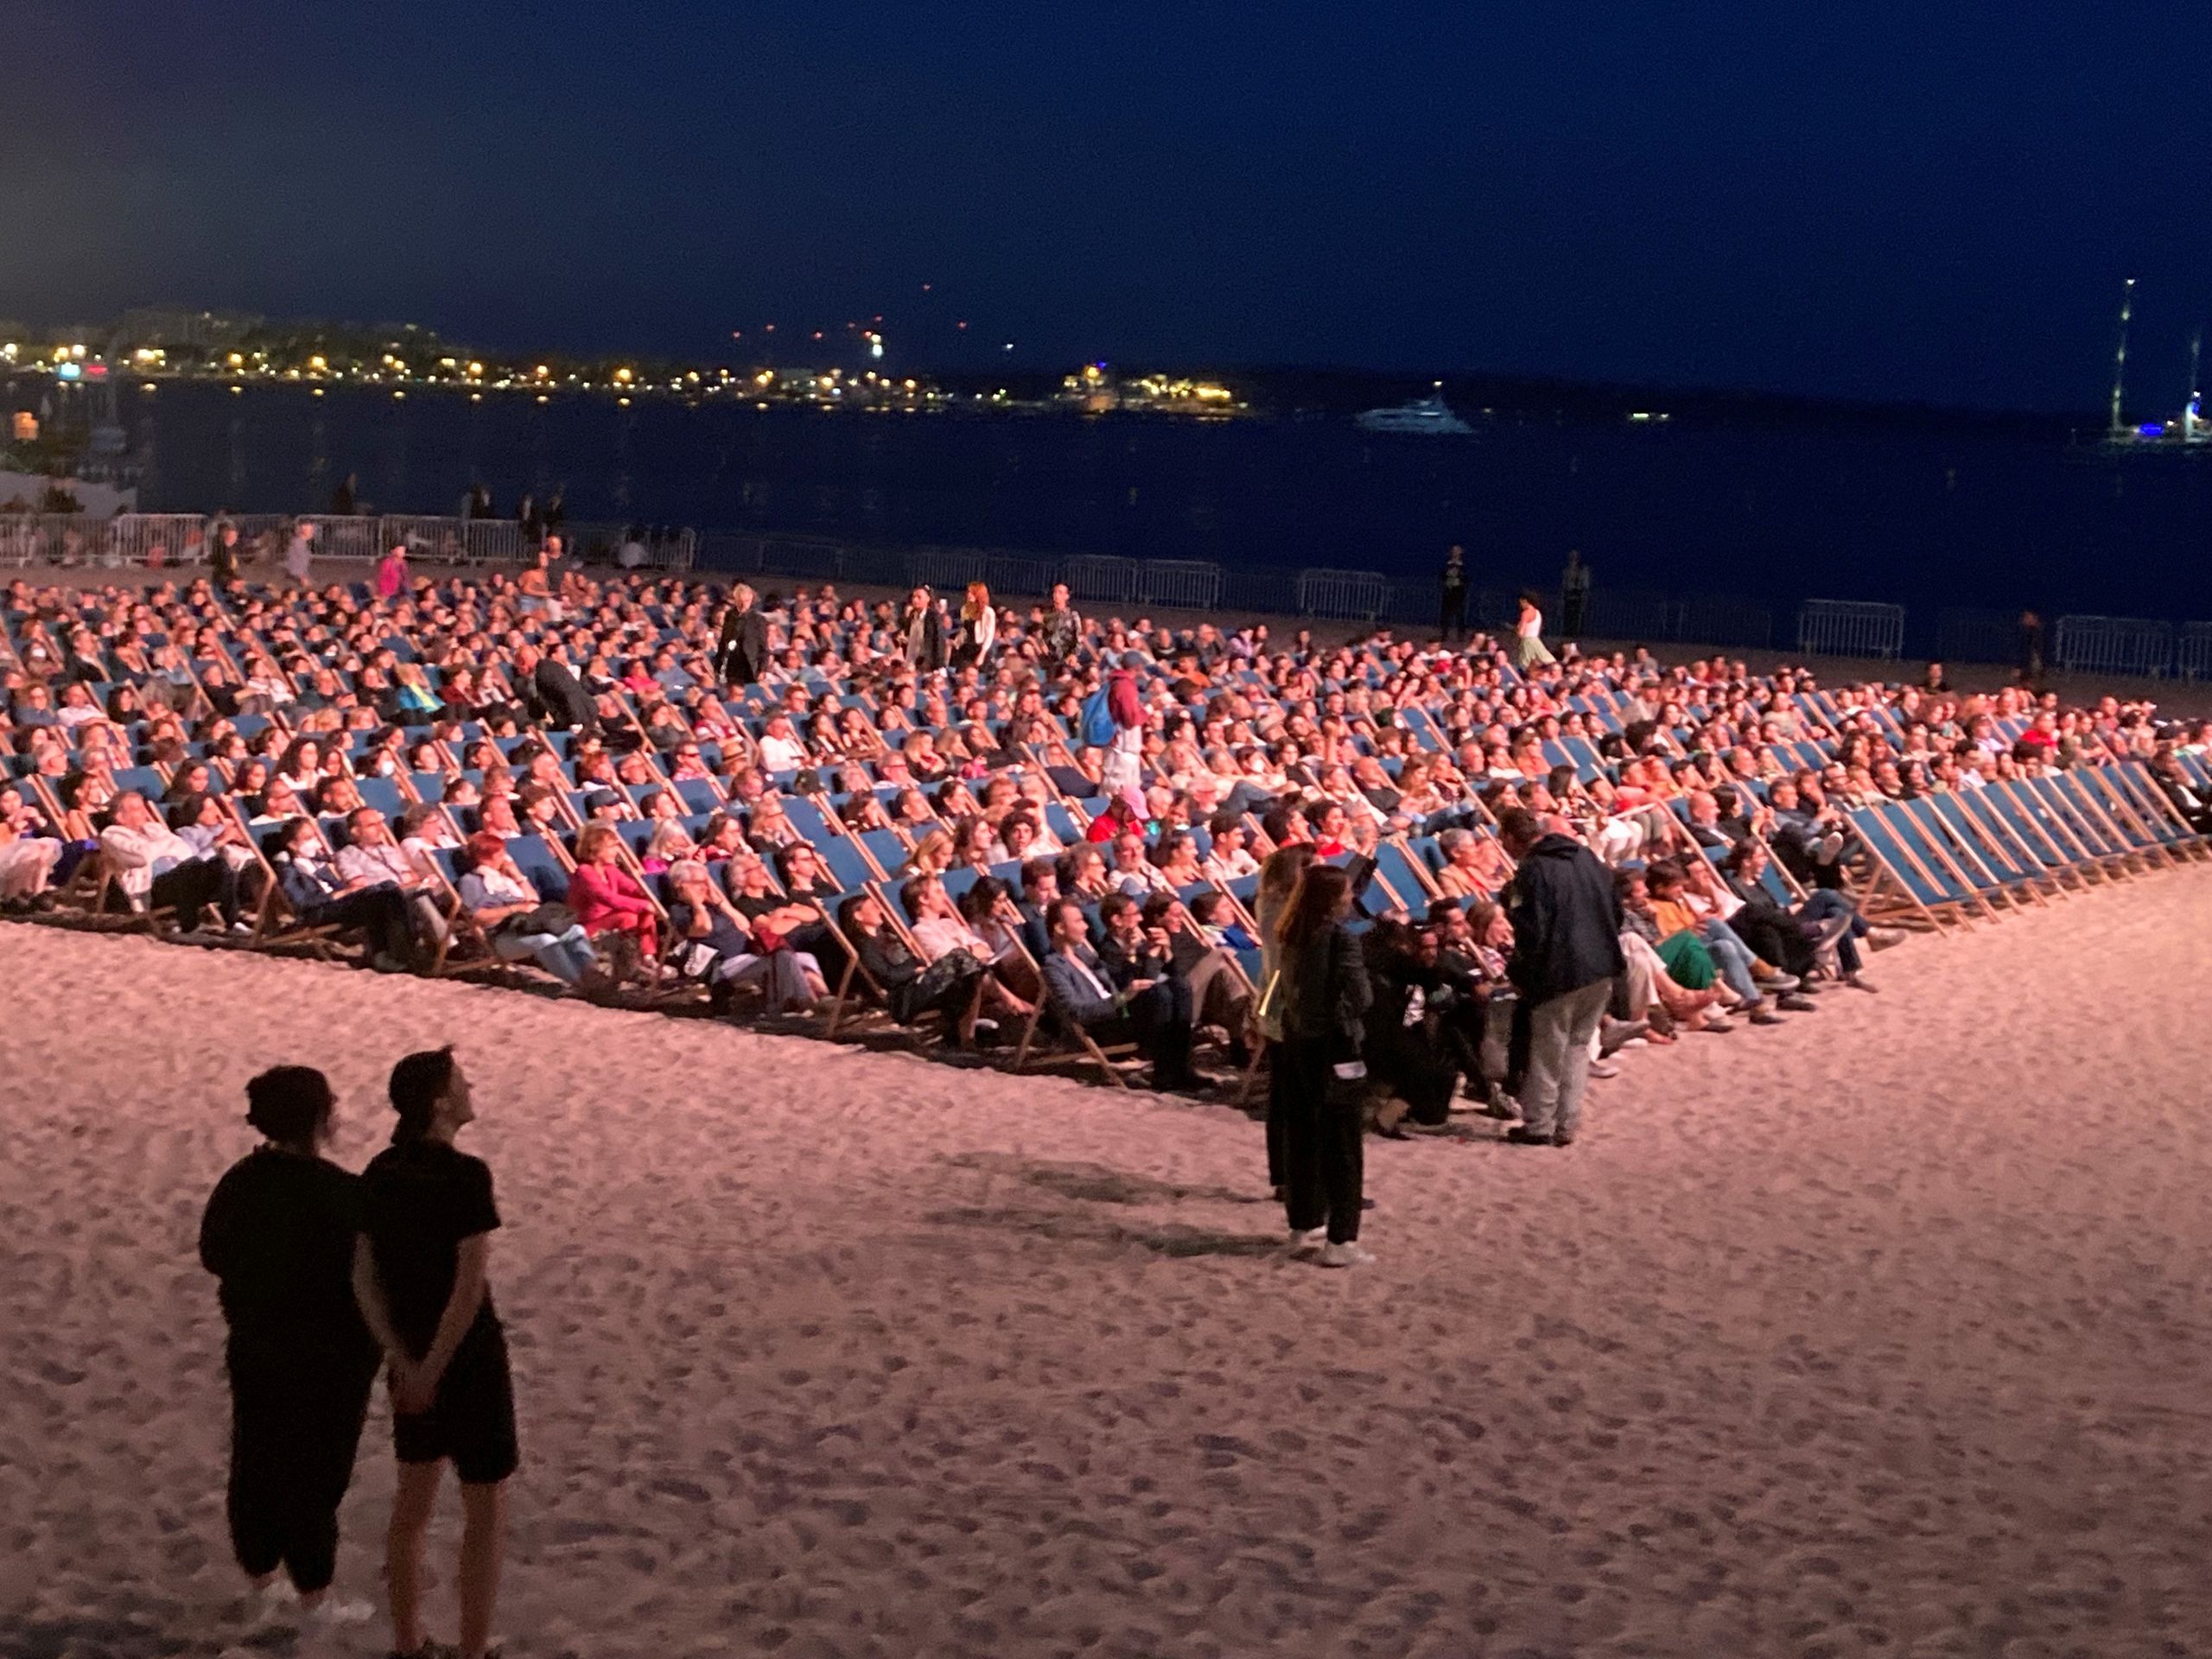 Eine Strand voller Menschen in Liegestühlen, ordentlich aufgereiht in eine Richtung positioniert 